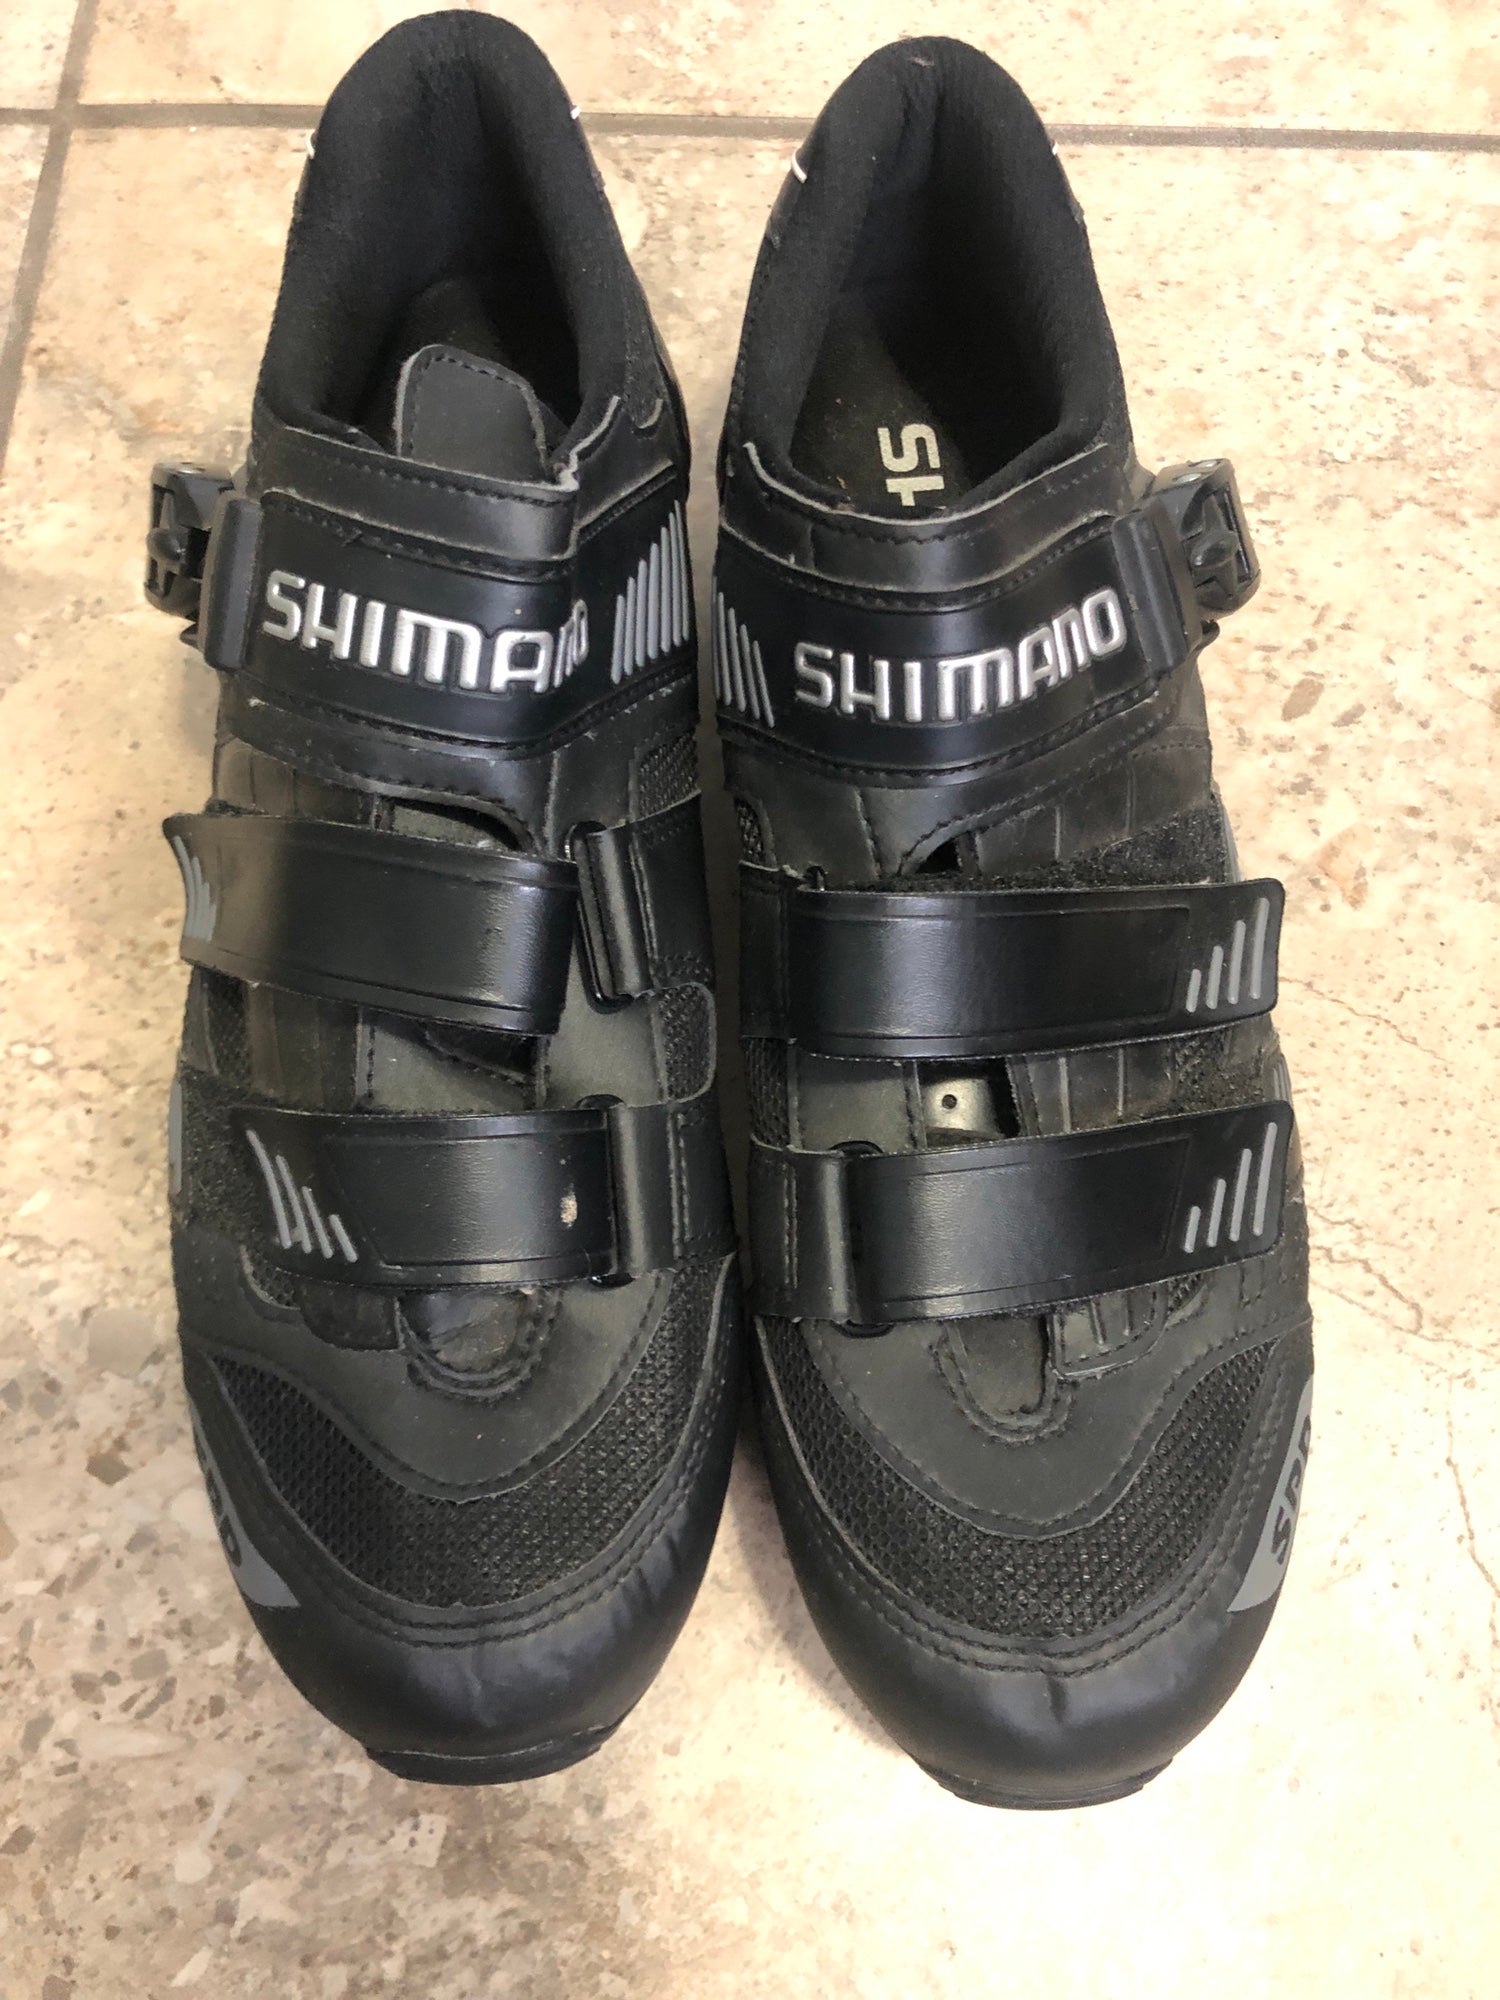 Shimano RP1 Cycling Road Bike Shoes SH-RP100 Mens Size 42 thru 48 US 8.3 to 12.3 